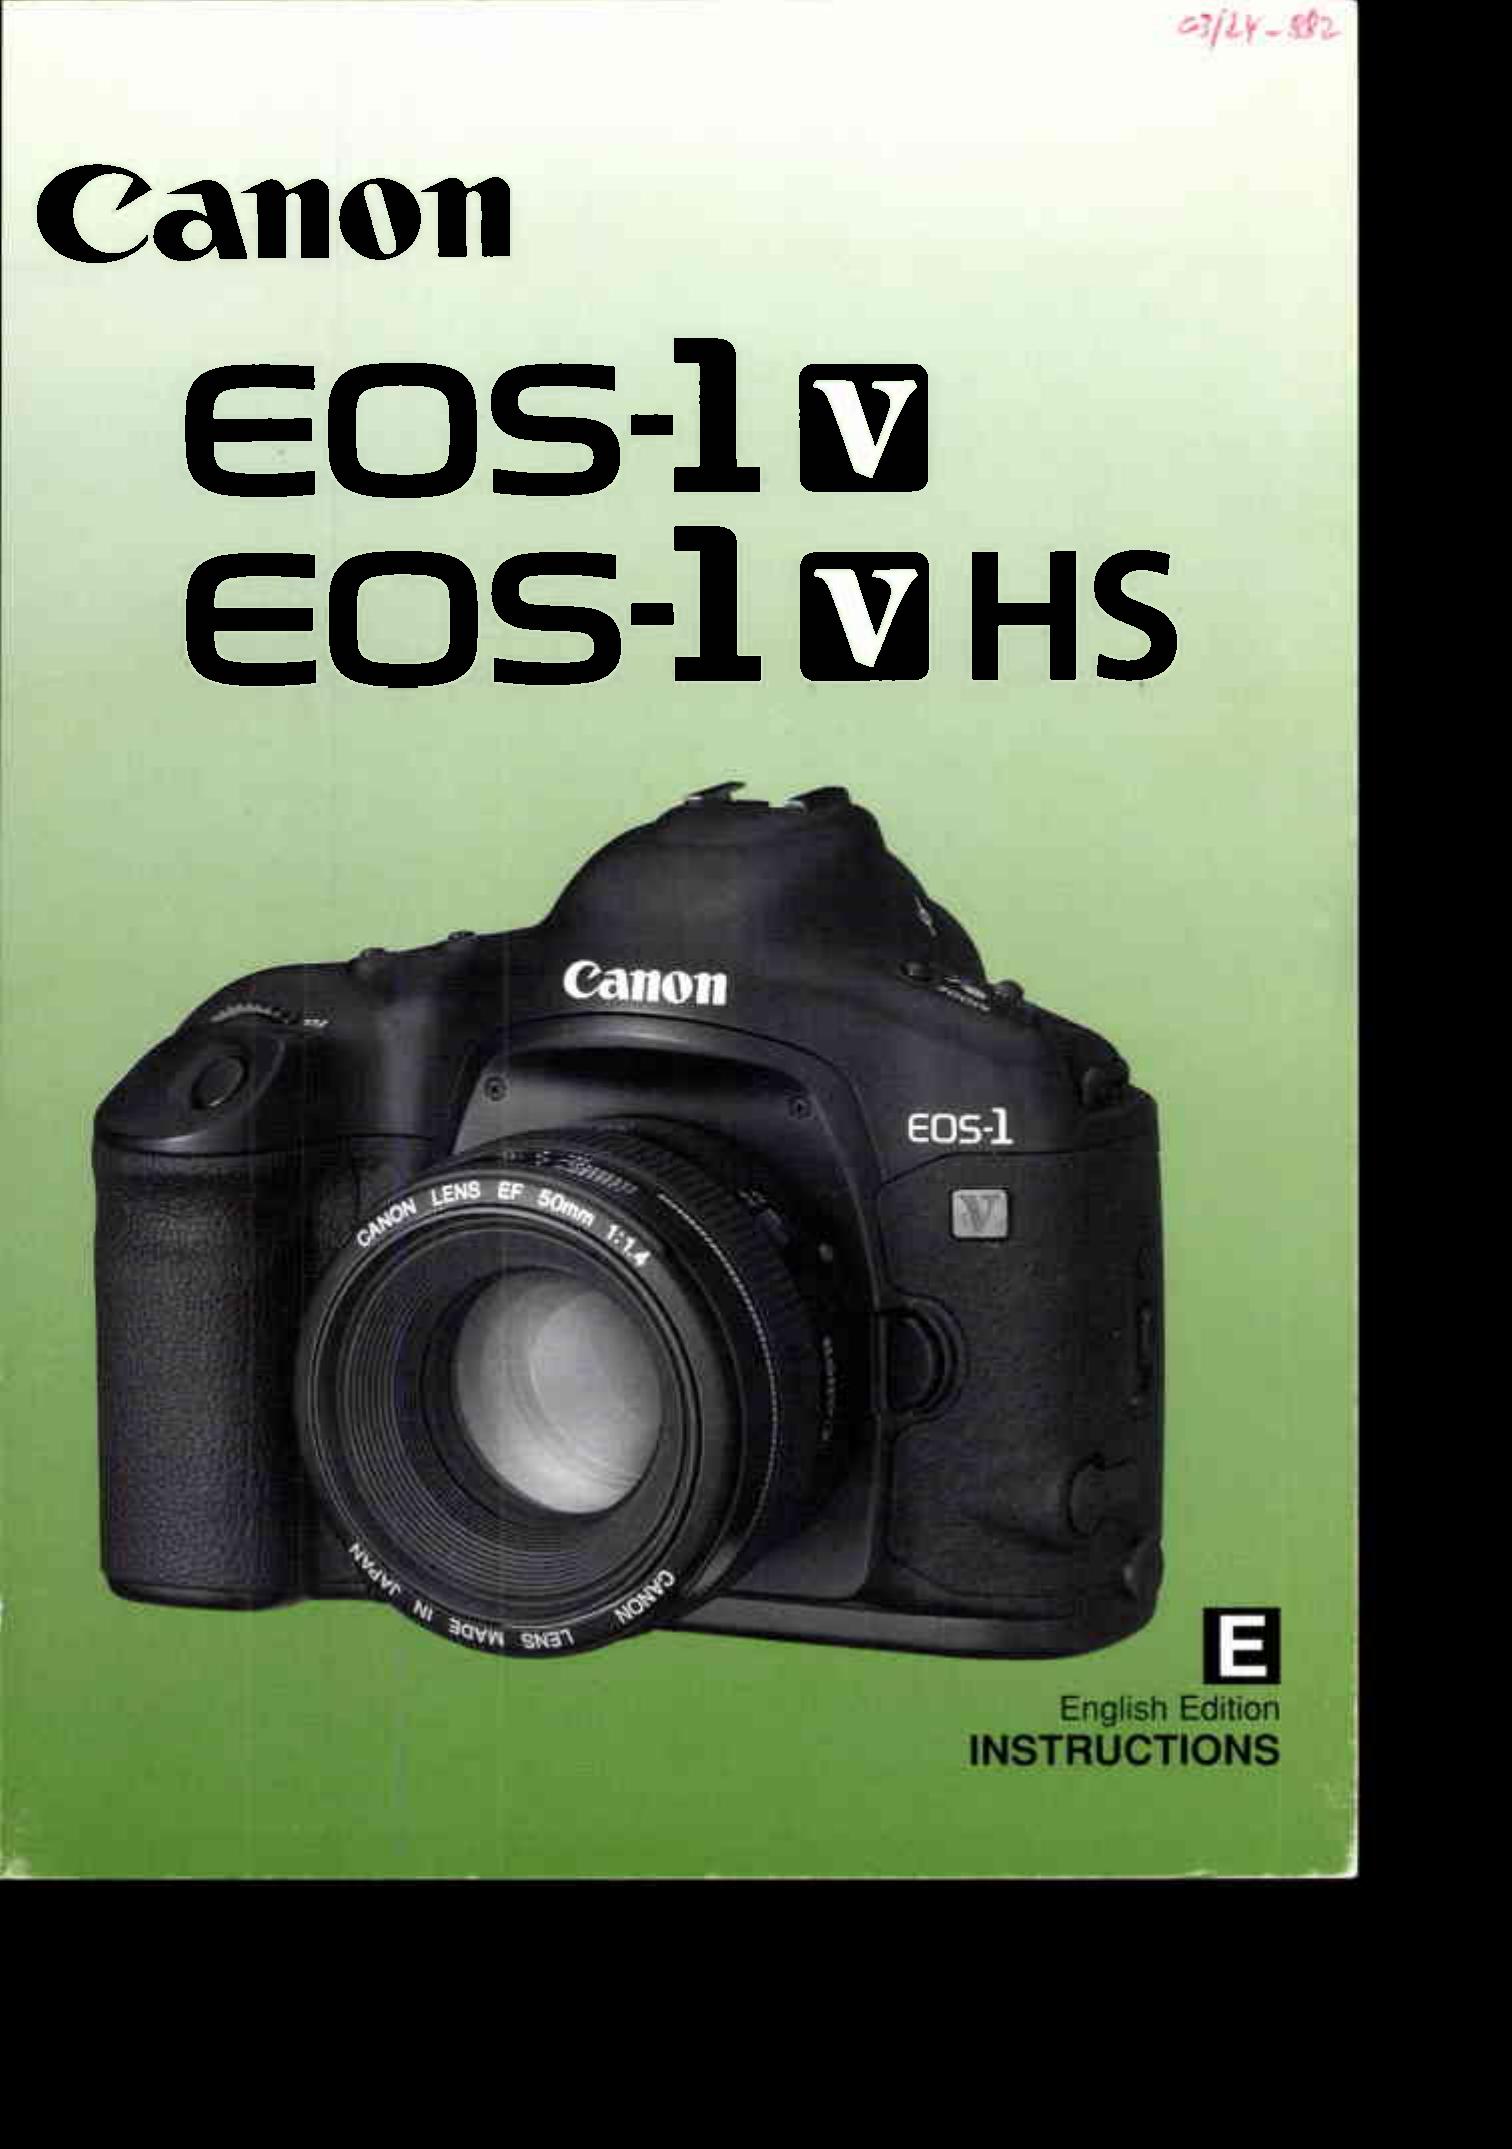 Canon 1V-HS Digital Camera User Manual